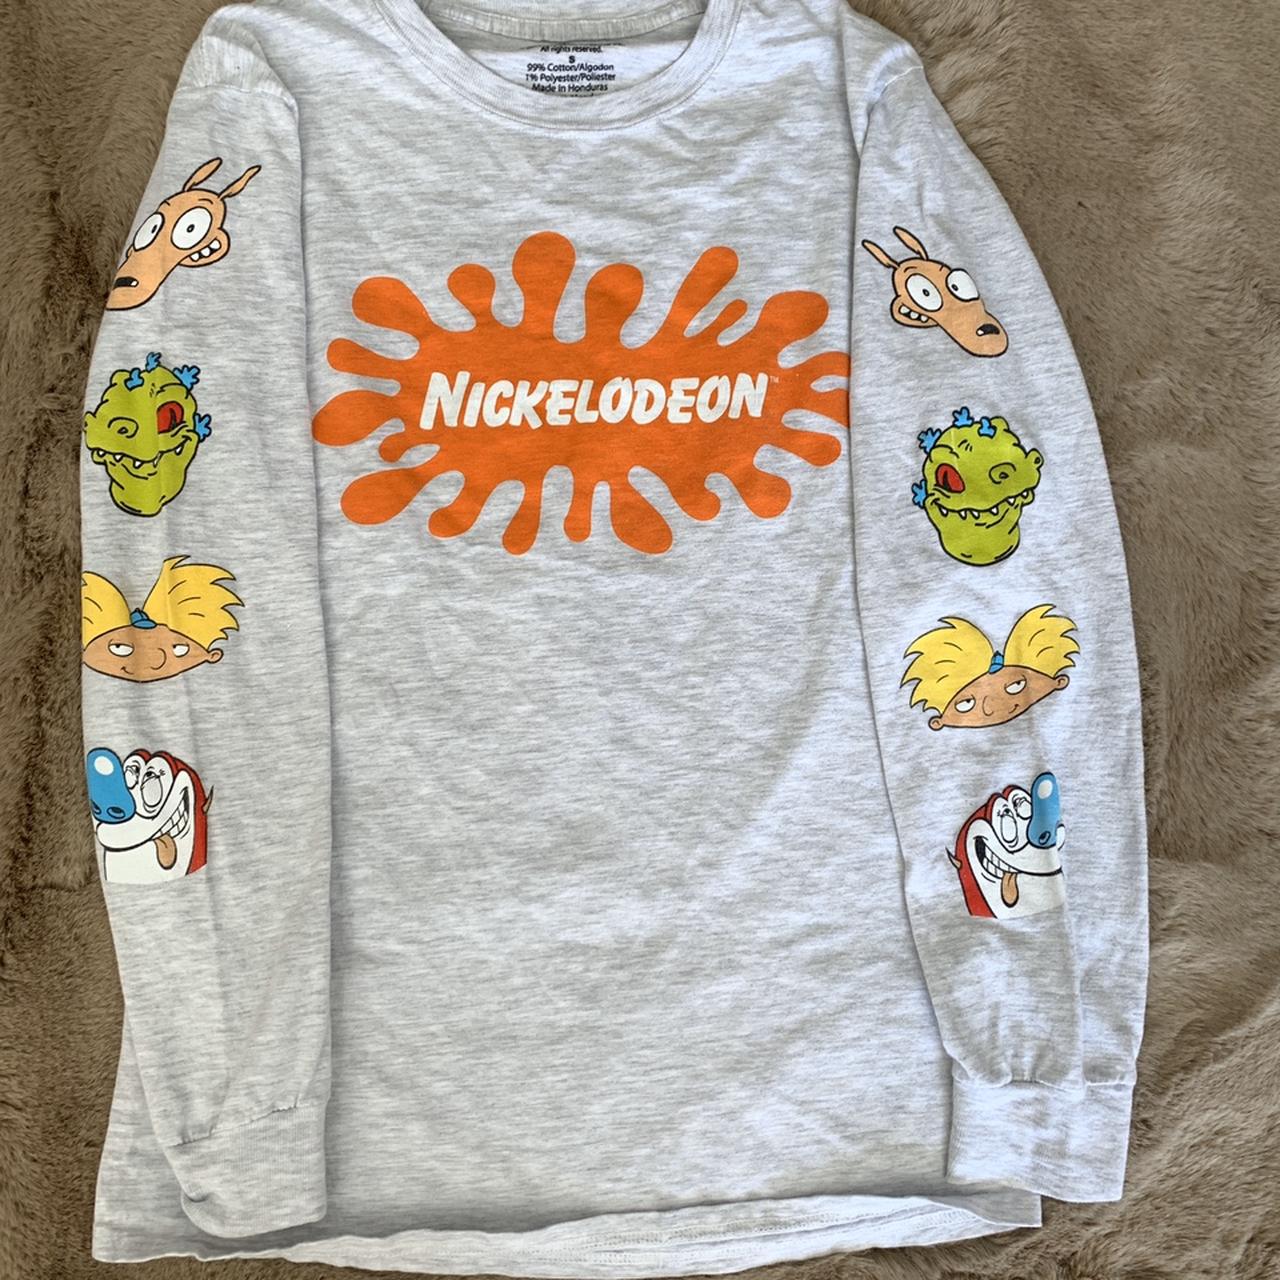 Vintage 90s Nickelodeon Long sleeve, didn’t take any... - Depop